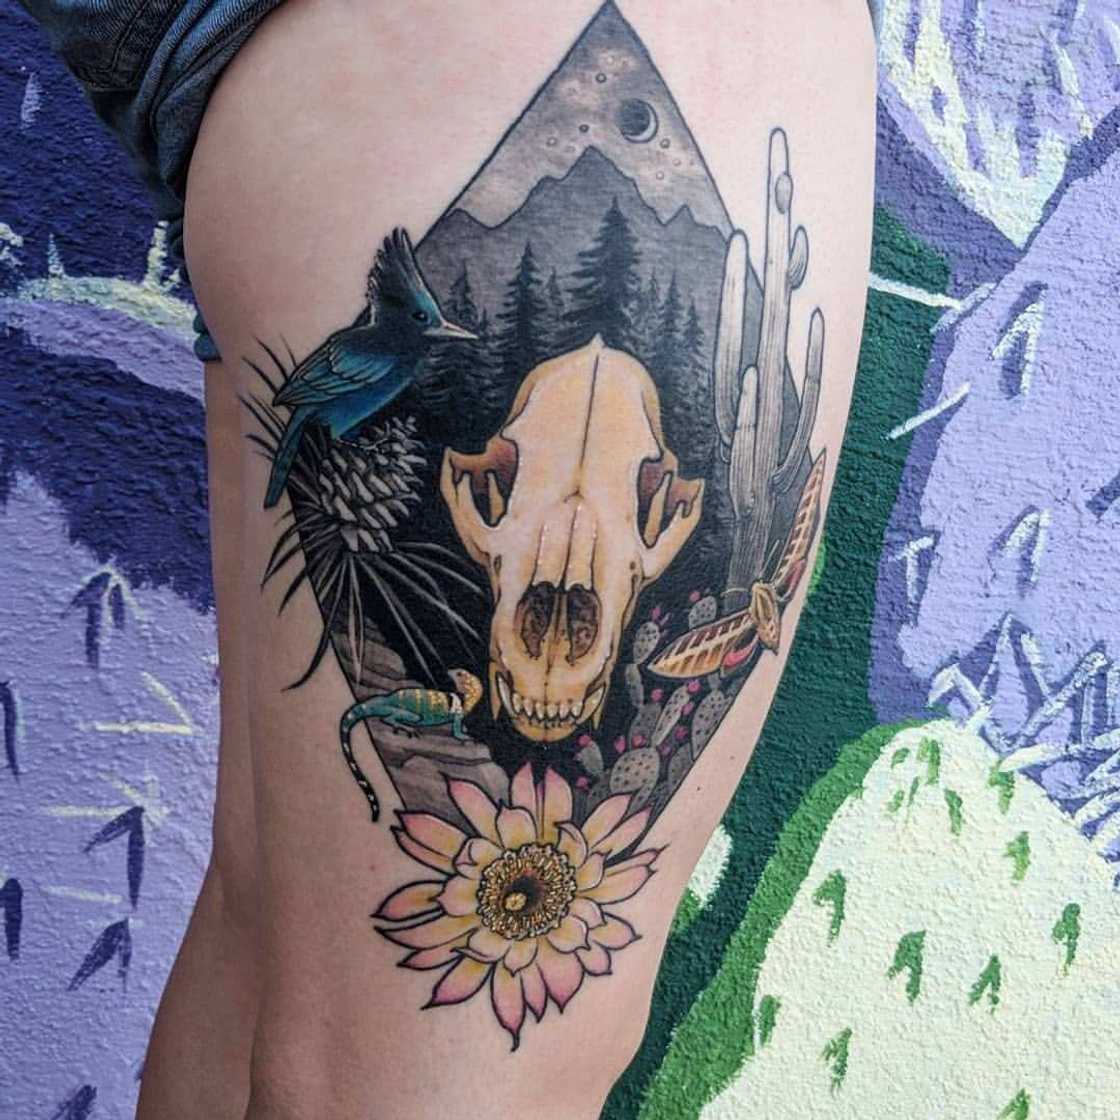 Bear skull tattoo